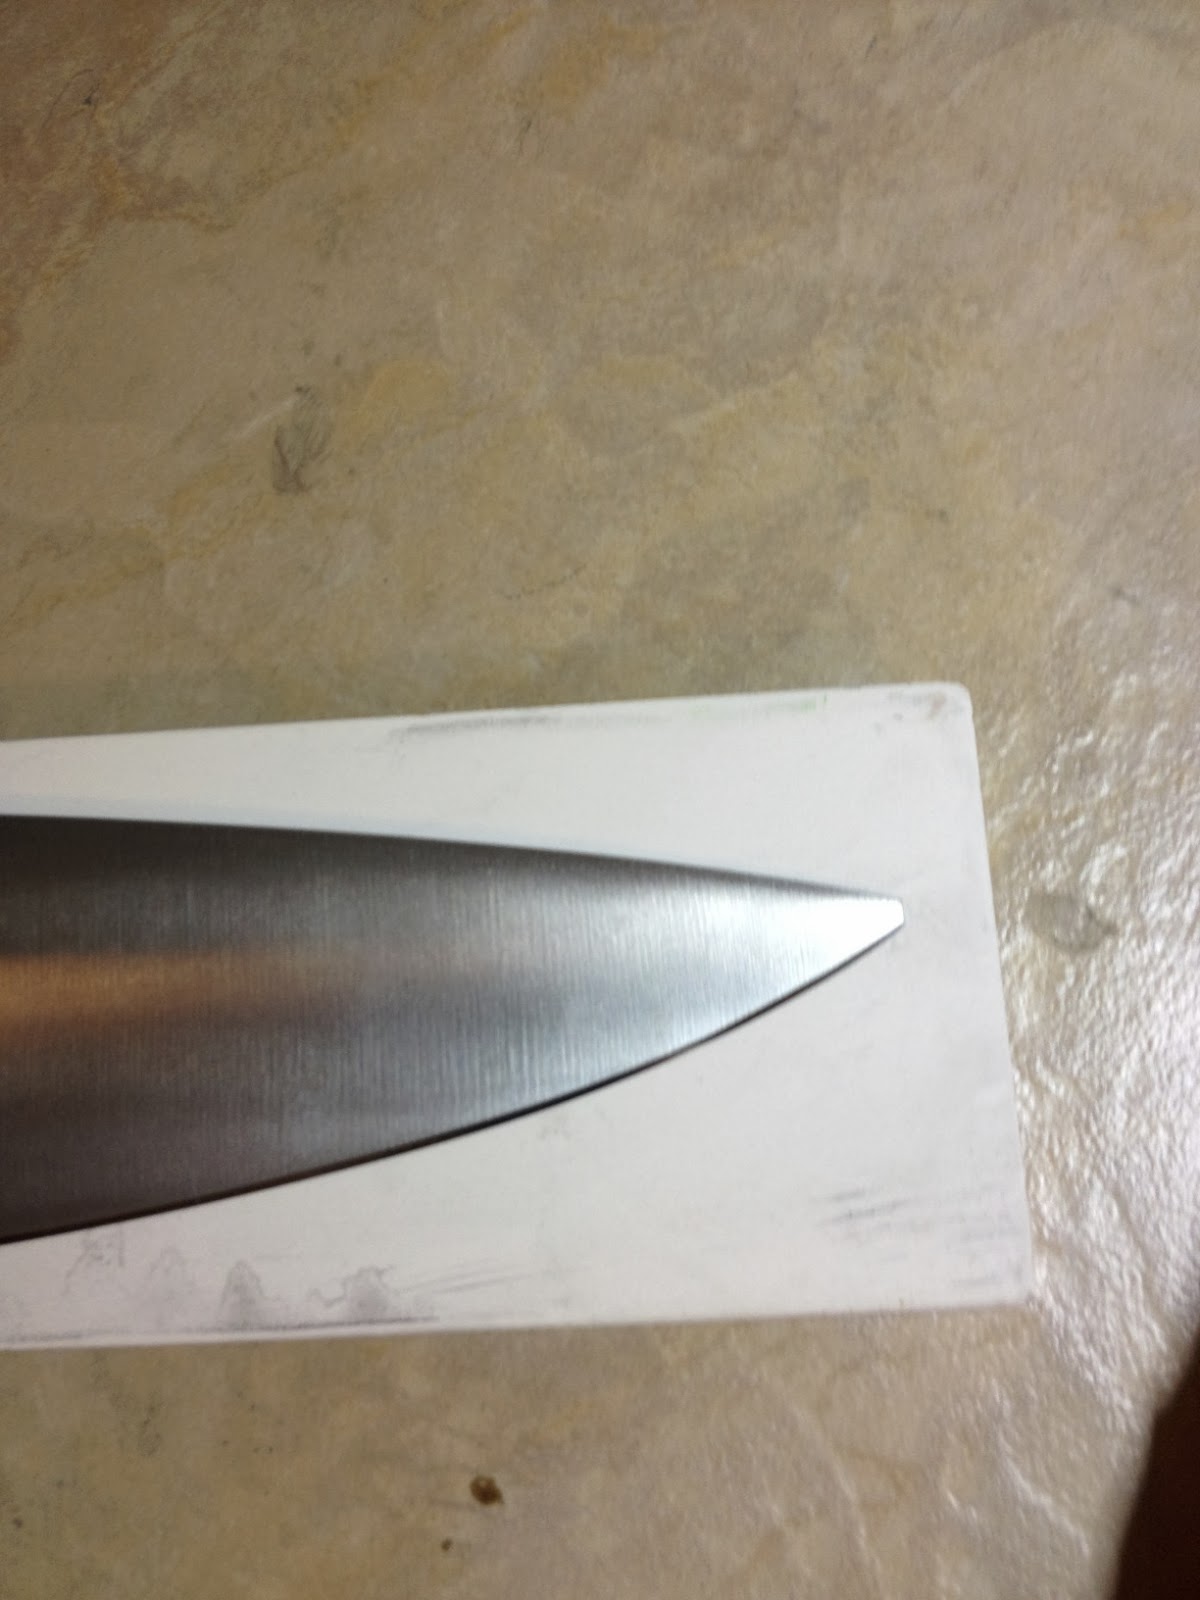 Sharpening - Kramer Knives